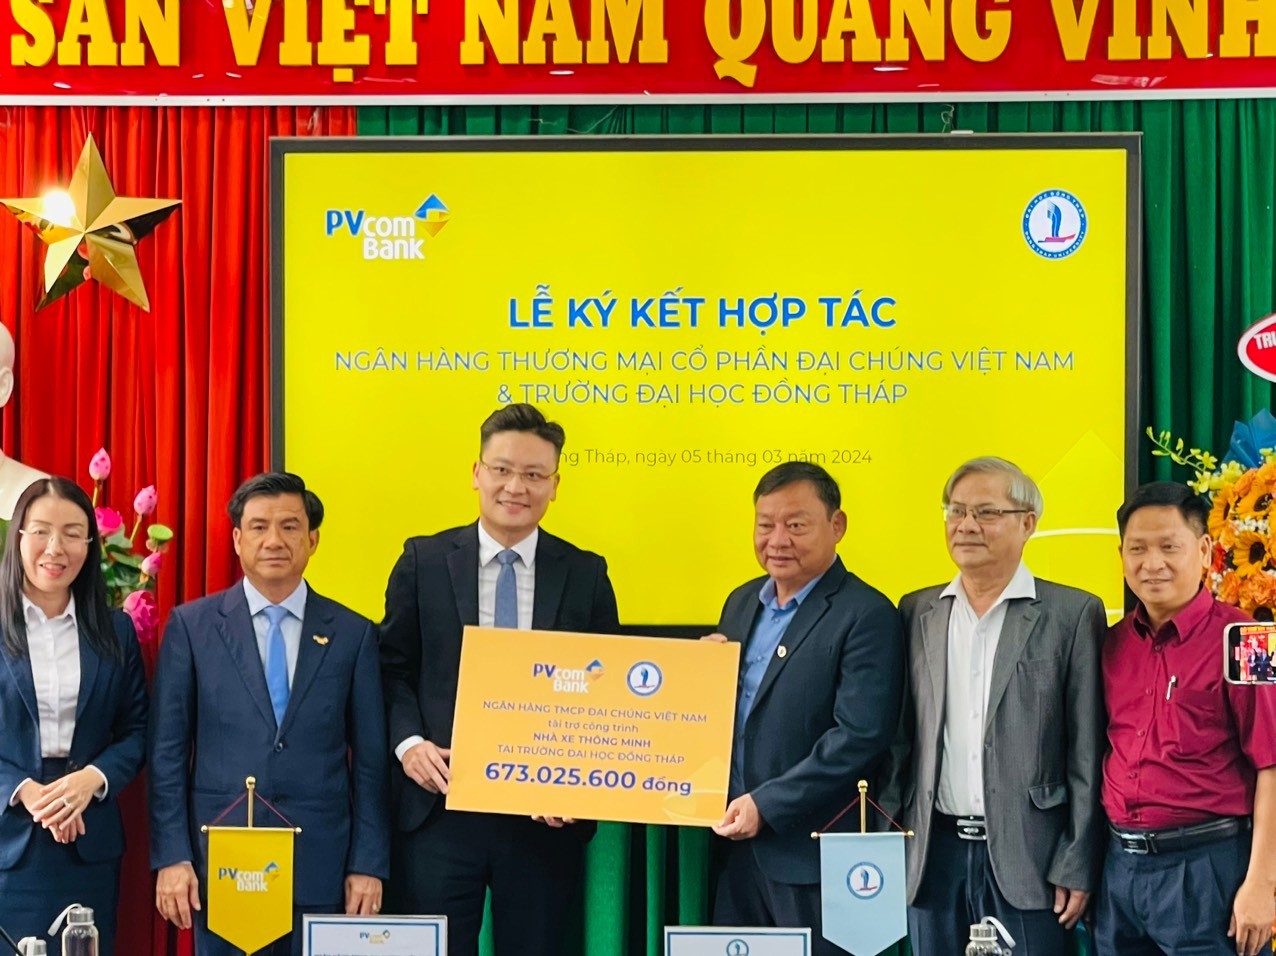 PVcomBank tài trợ nhà xe thông minh cho trường Đại học Đồng Tháp- Ảnh 2.